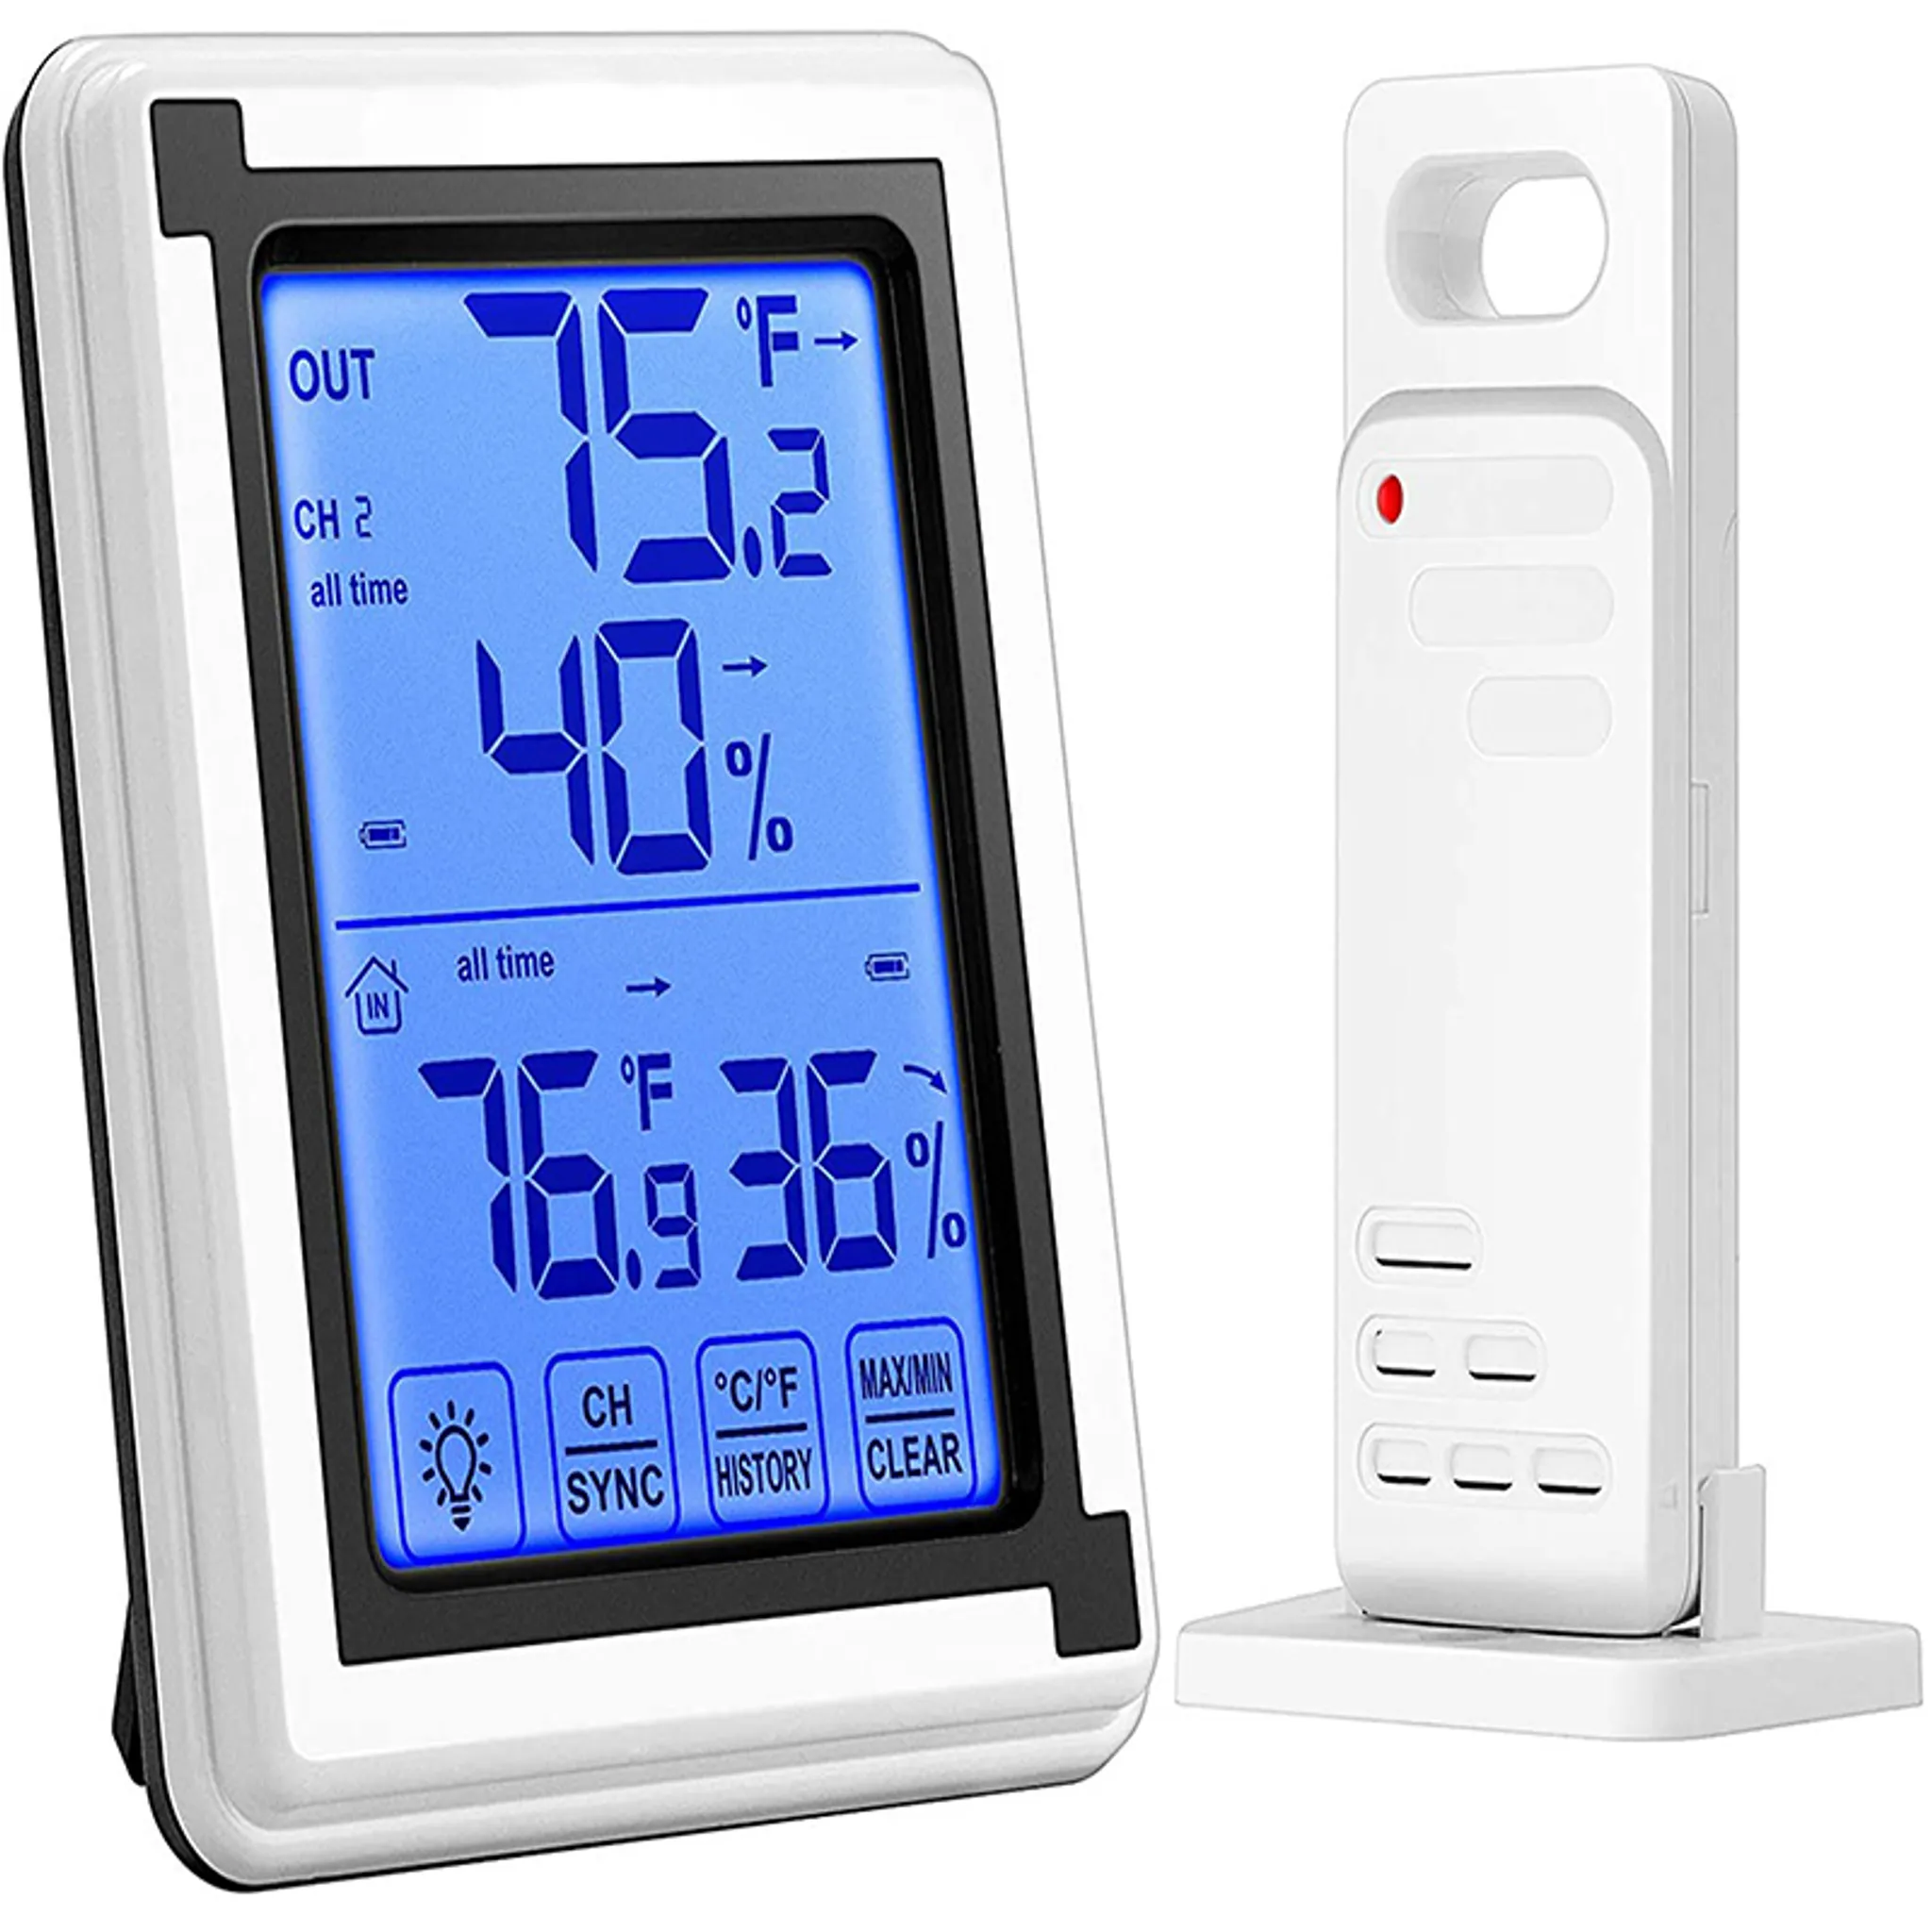 Hygrometer, Temperaturthermometer für Innen-, Außen-, Raum- und